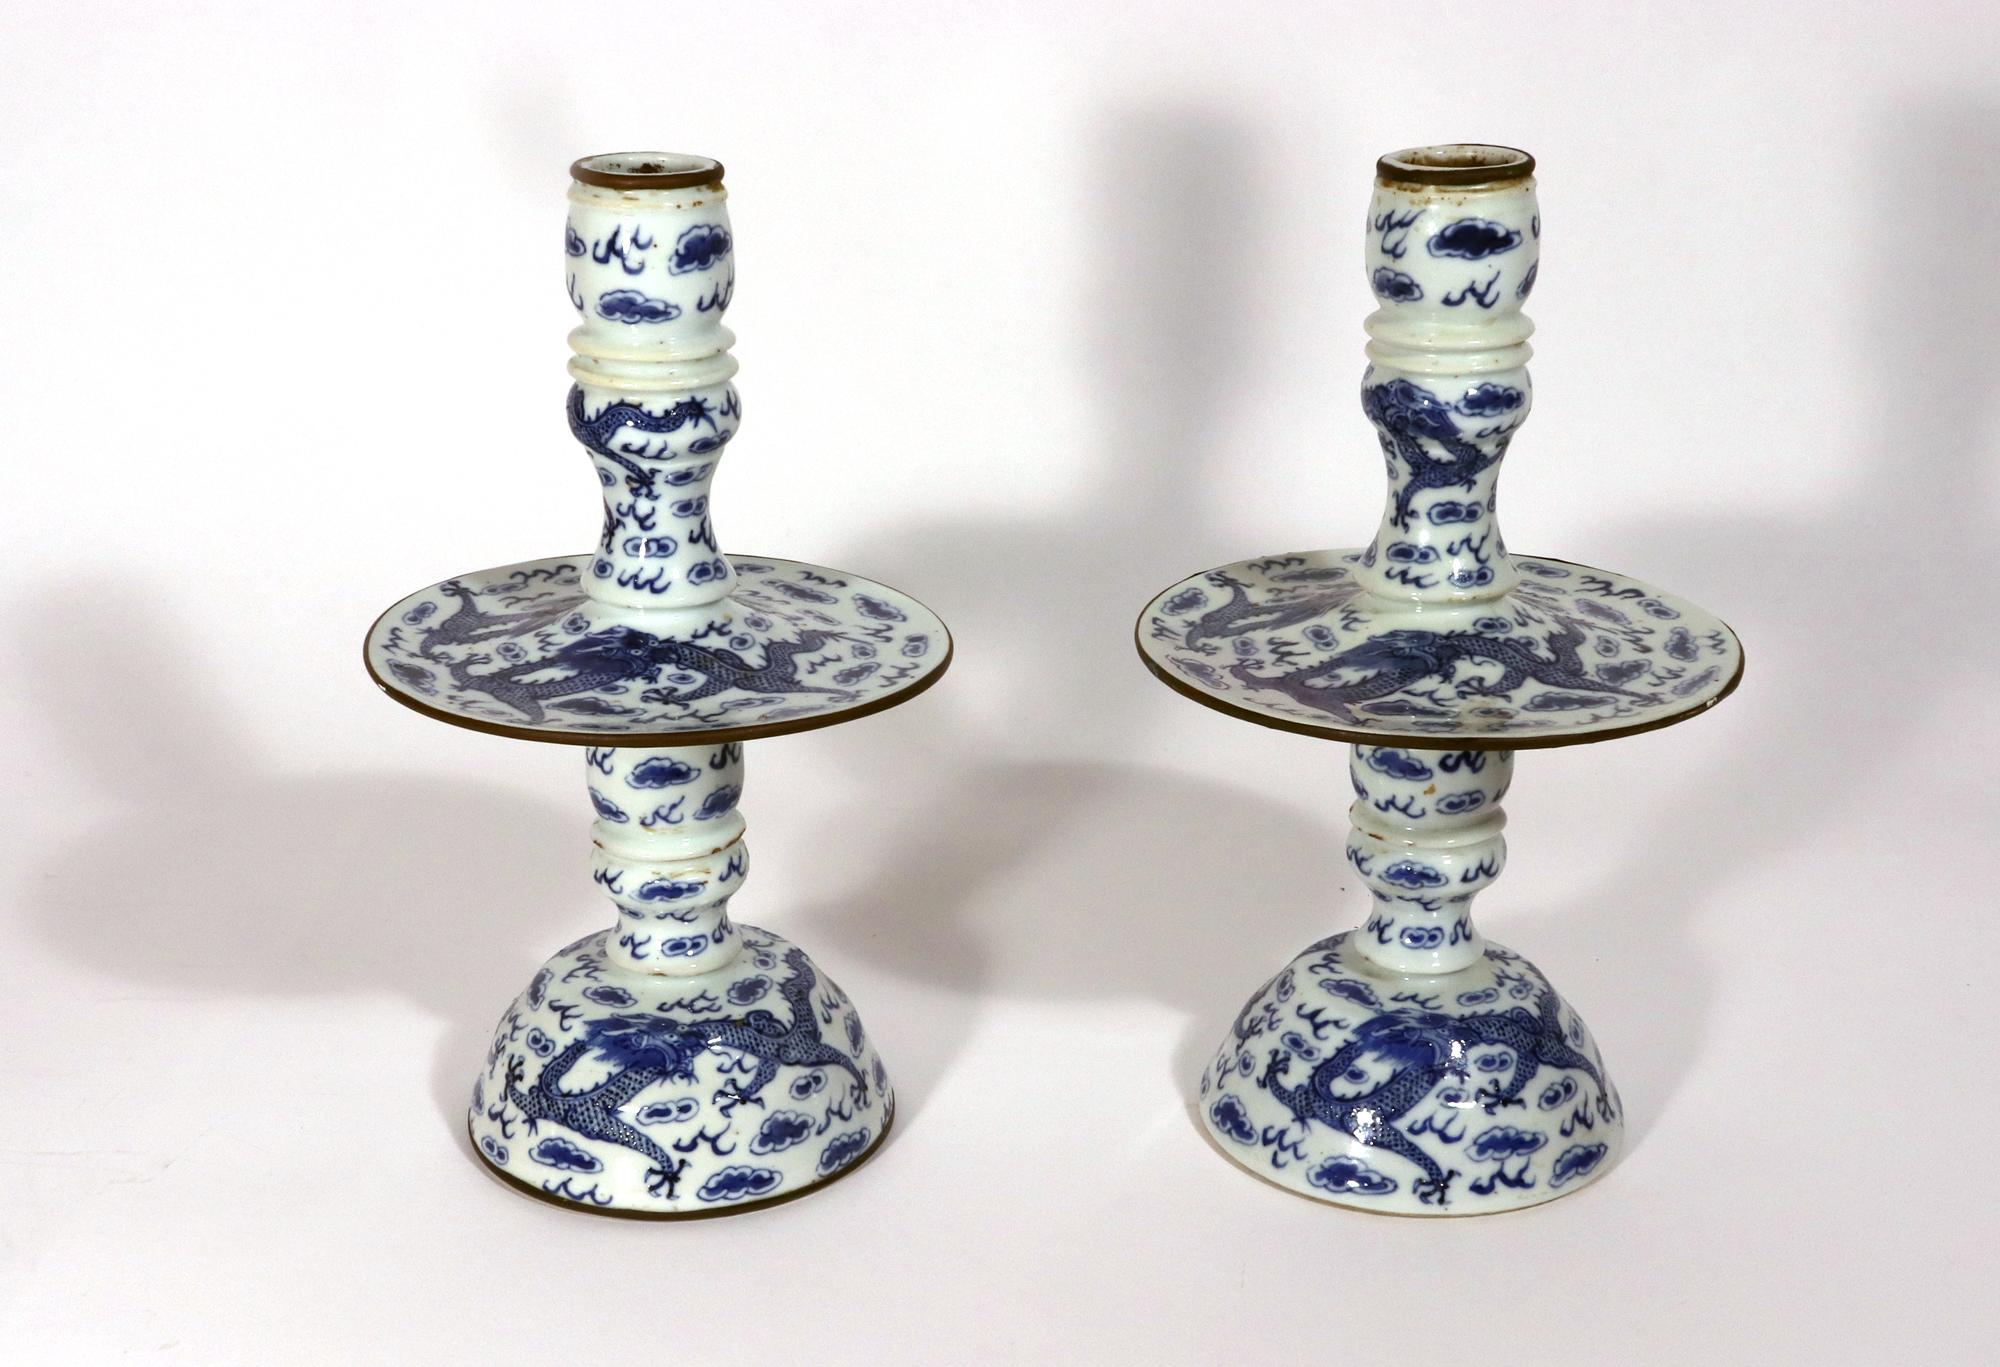 Paire de chandeliers en porcelaine d'exportation chinoise bleu sous glaçure,
Vers 1850-80

La paire de chandeliers en porcelaine bleue sous glaçure d'exportation chinoise a une base circulaire en forme de dôme et de pétale, la colonne étant dotée